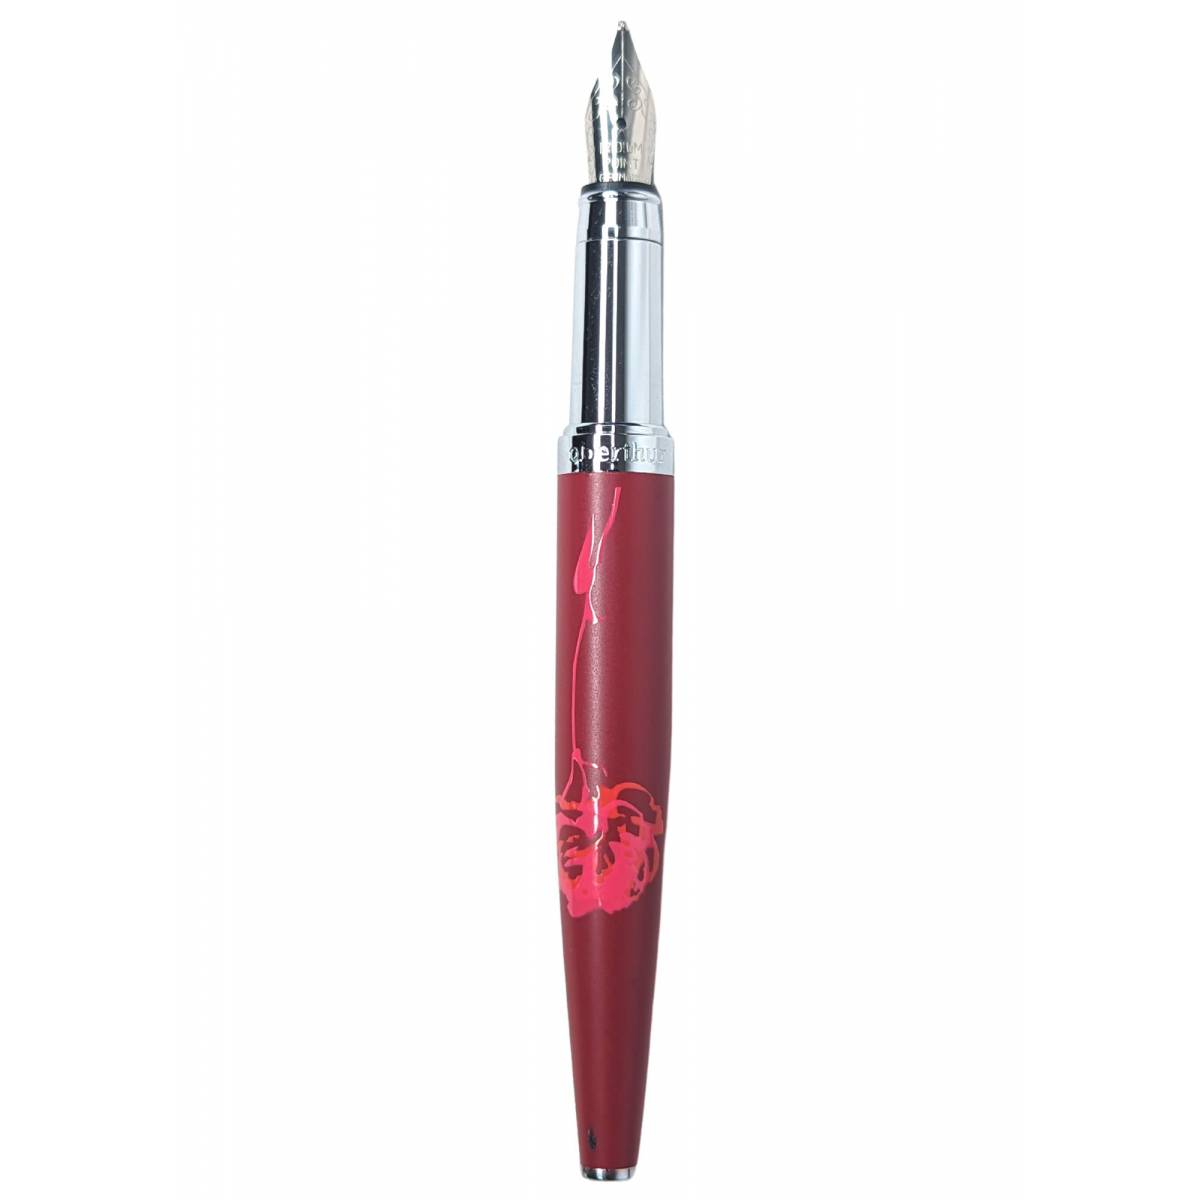 Fountain pen Oberthur Carmen carmine red